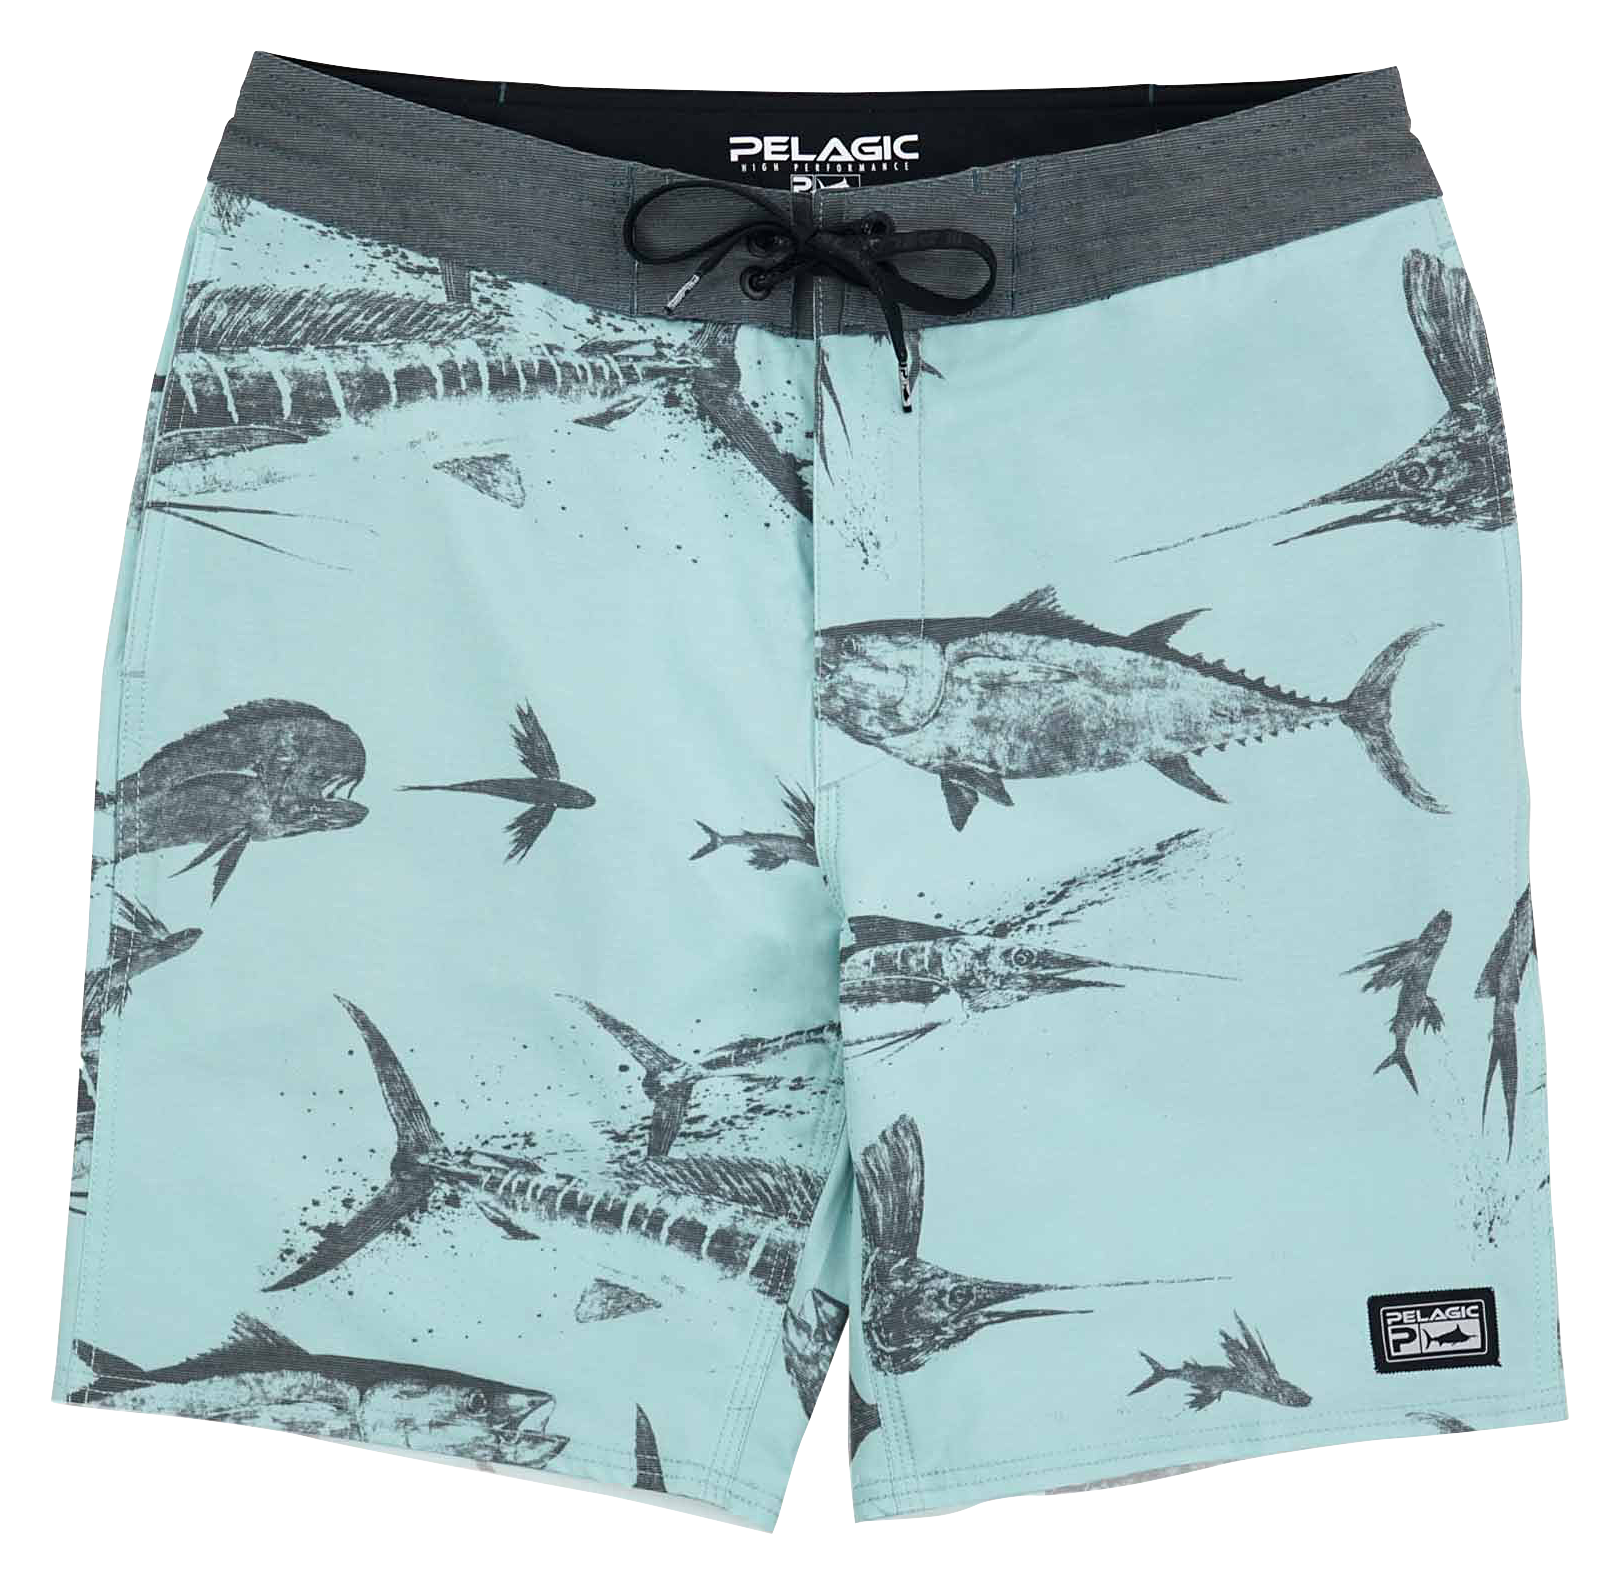 Pelagic Blue Water Fishing Shorts for Men